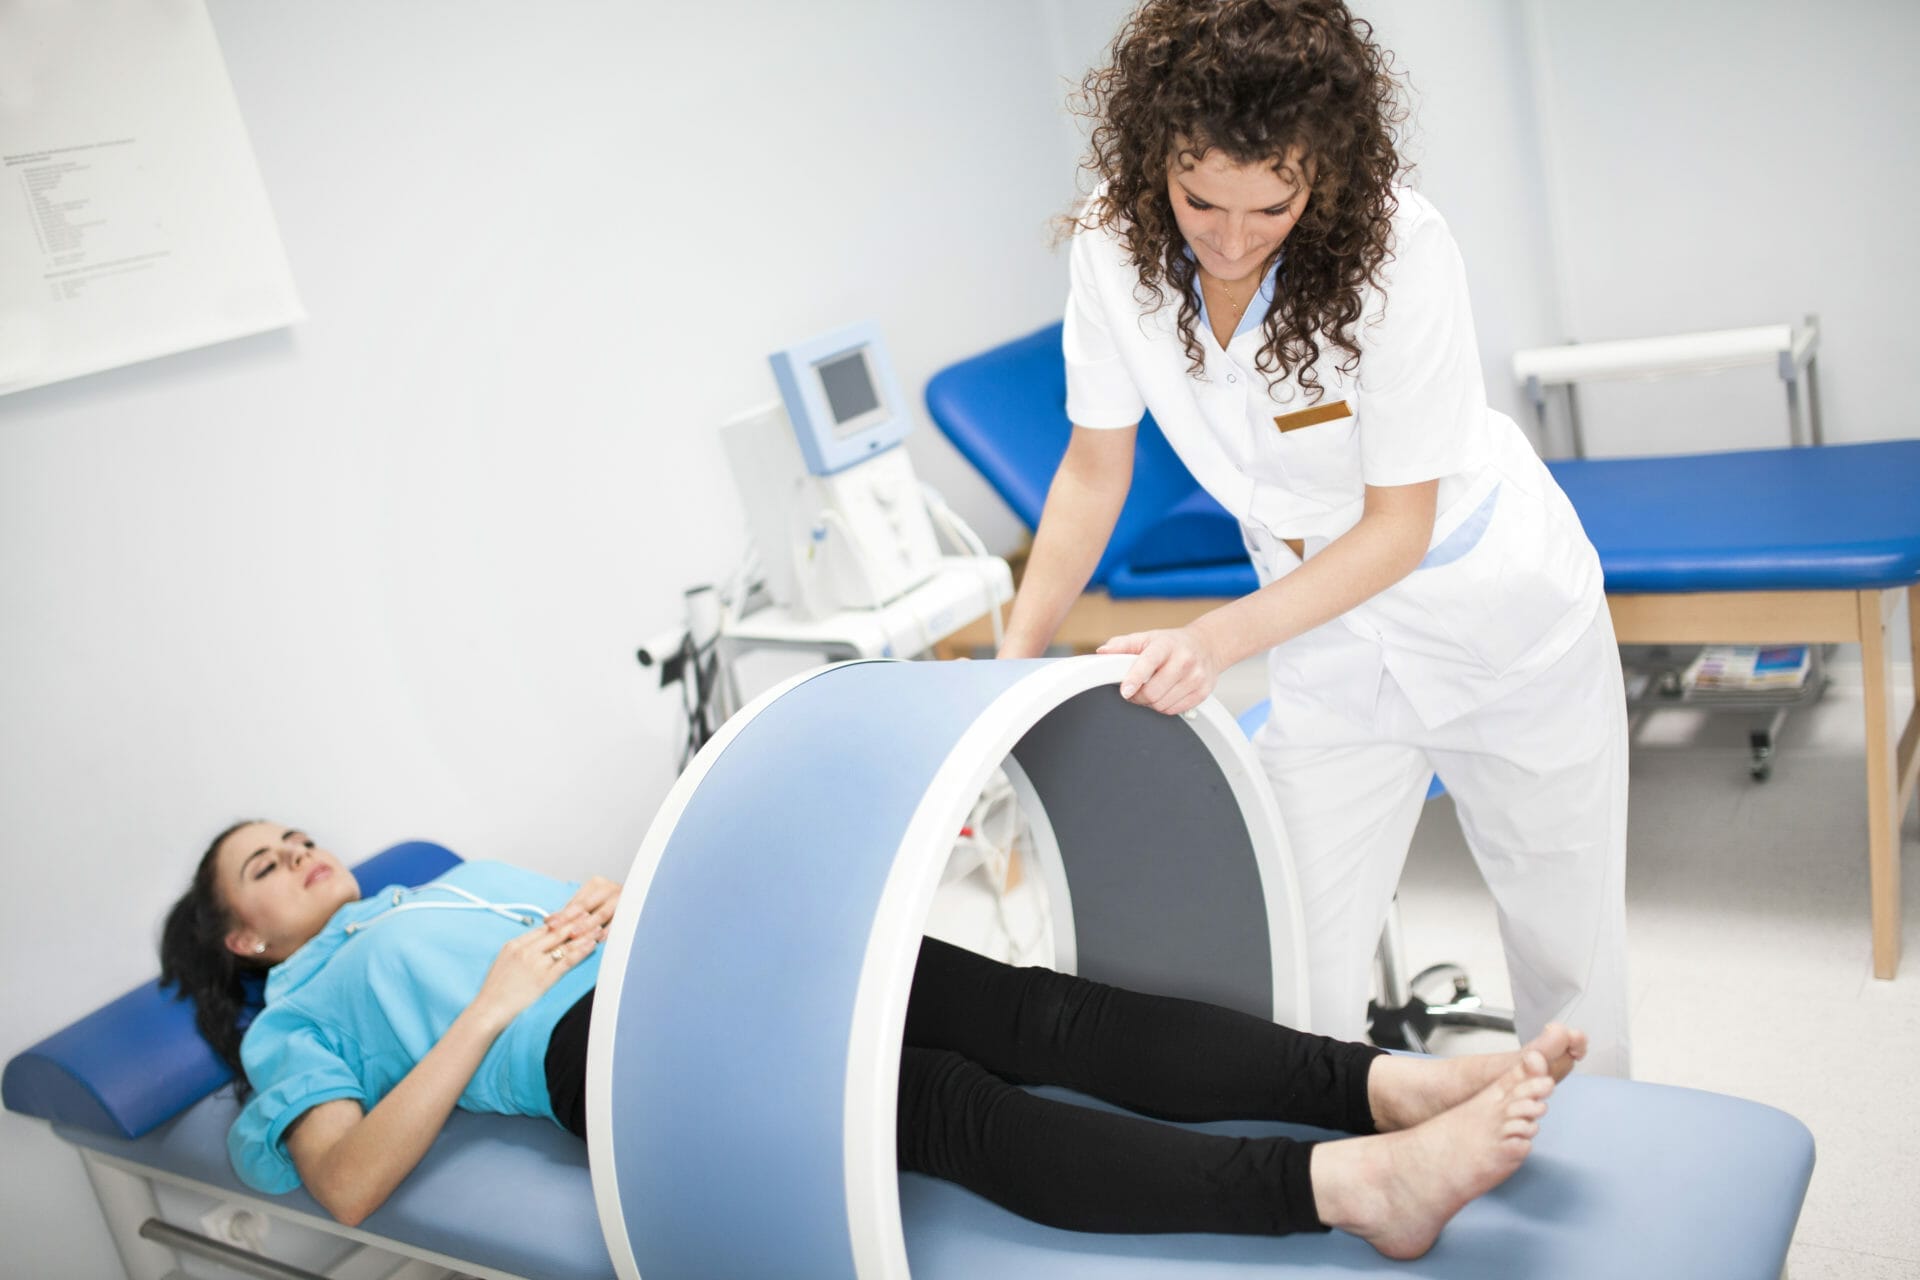 Equipos De Ultrasonido En Fisioterapia: Beneficios Y Aplicaciones, Sanamed